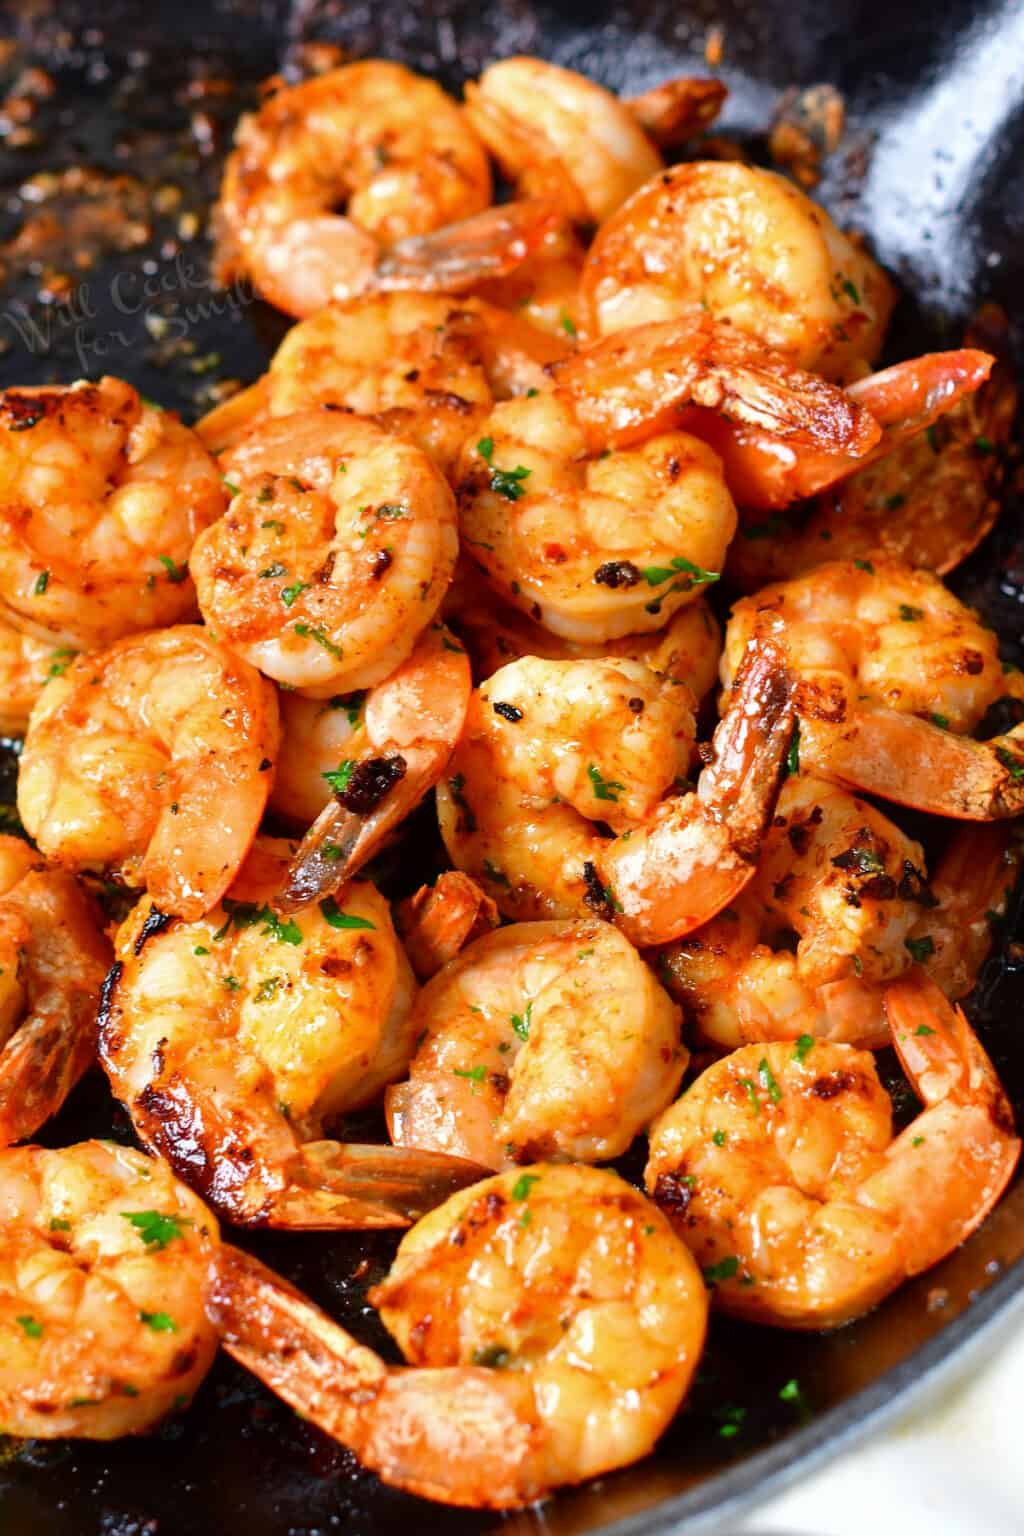 How to Cook Shrimp - Rijal's Blog